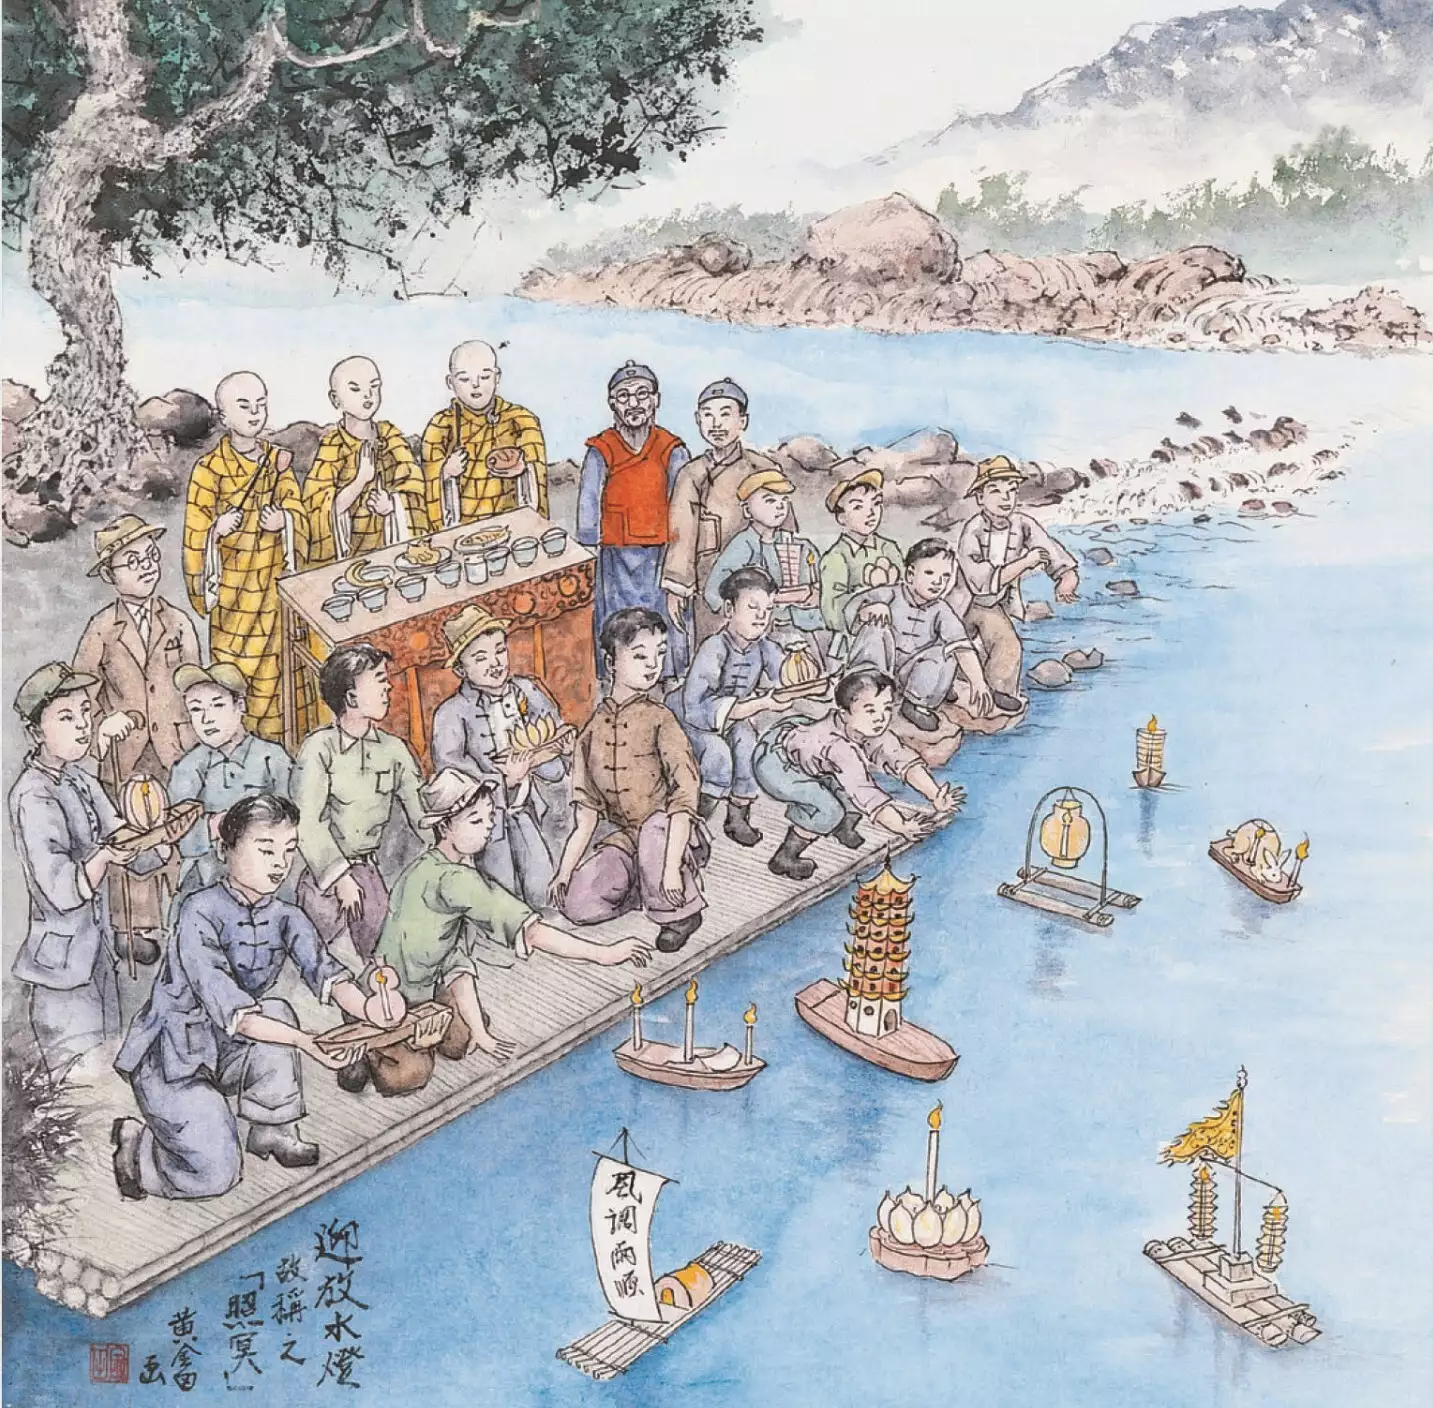 黃金田繪《迎放水燈》圖。放水燈用意在祭祀水中孤魂，臺灣有許多跟水鬼相關的民俗與傳說，隱約反映了水域環境與人們生活的關聯。